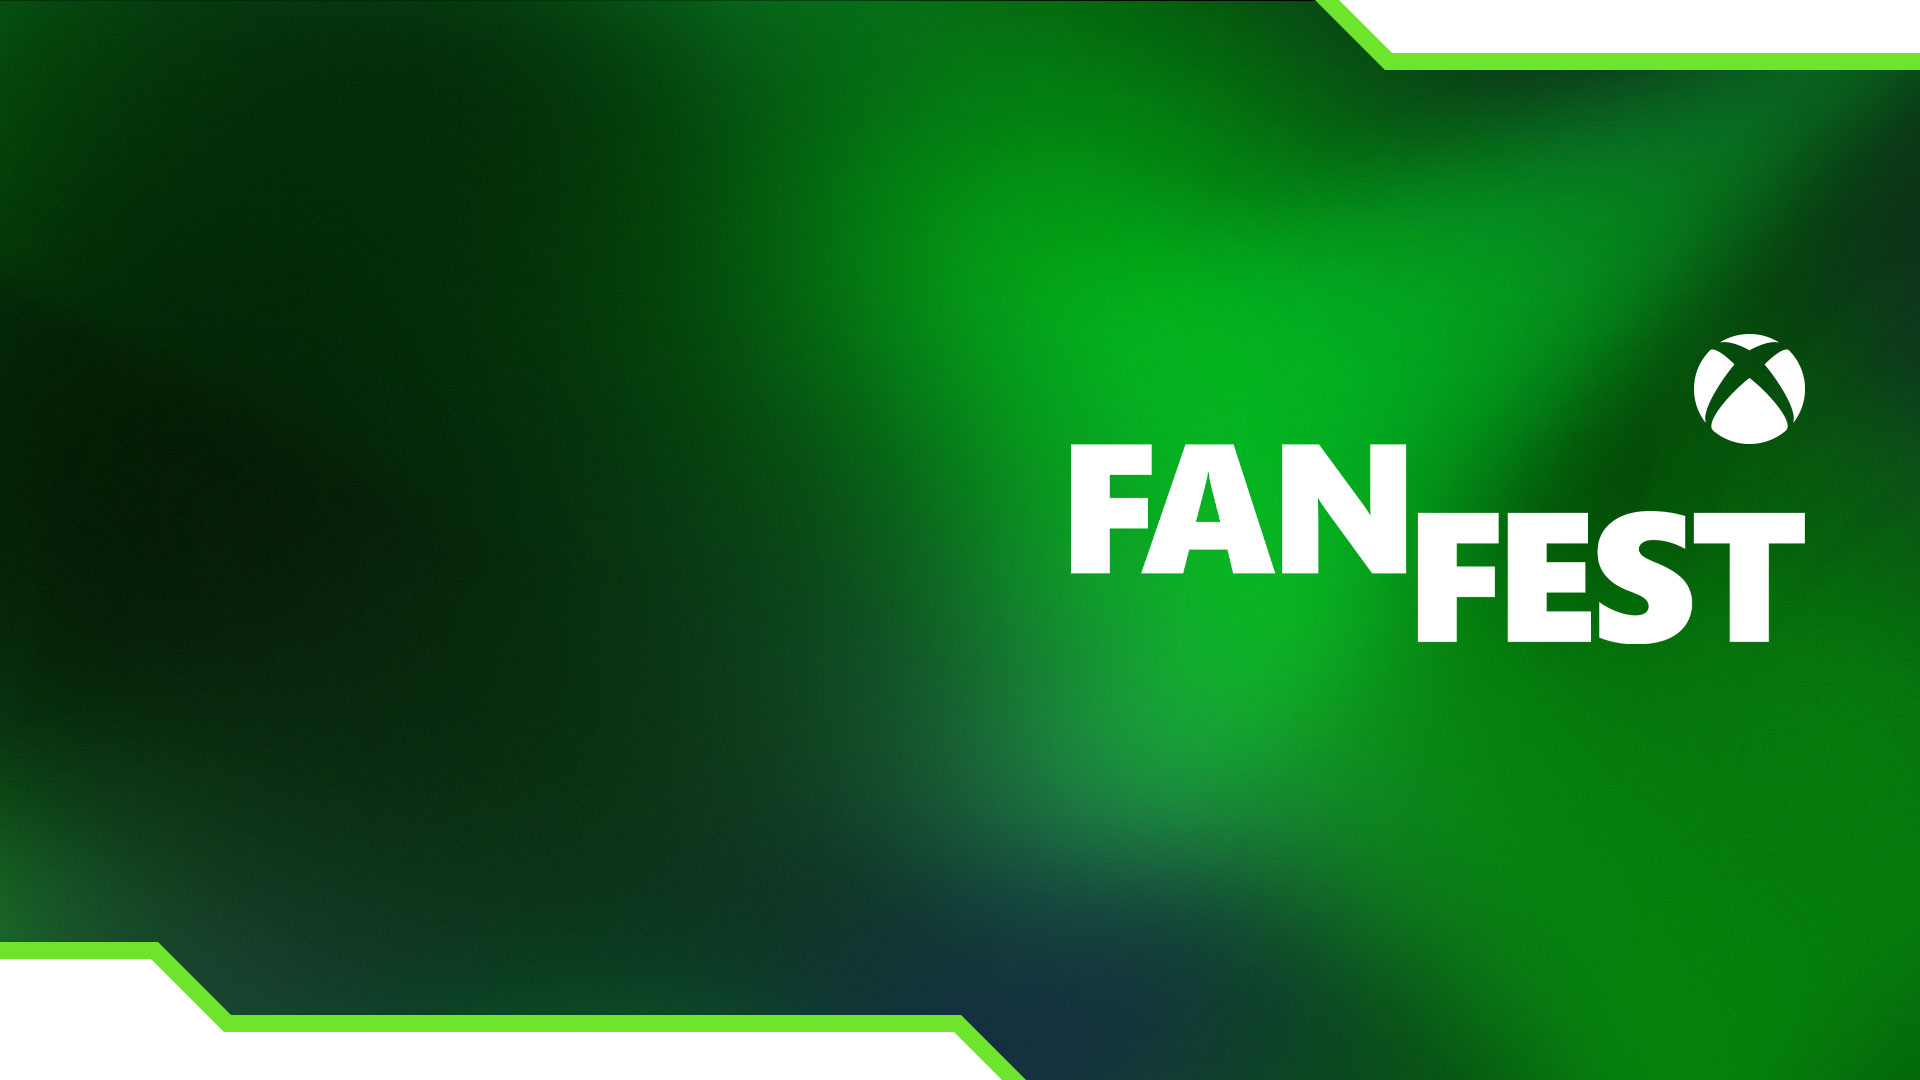 Xbox Sphere, FanFest com gradientes verdes.